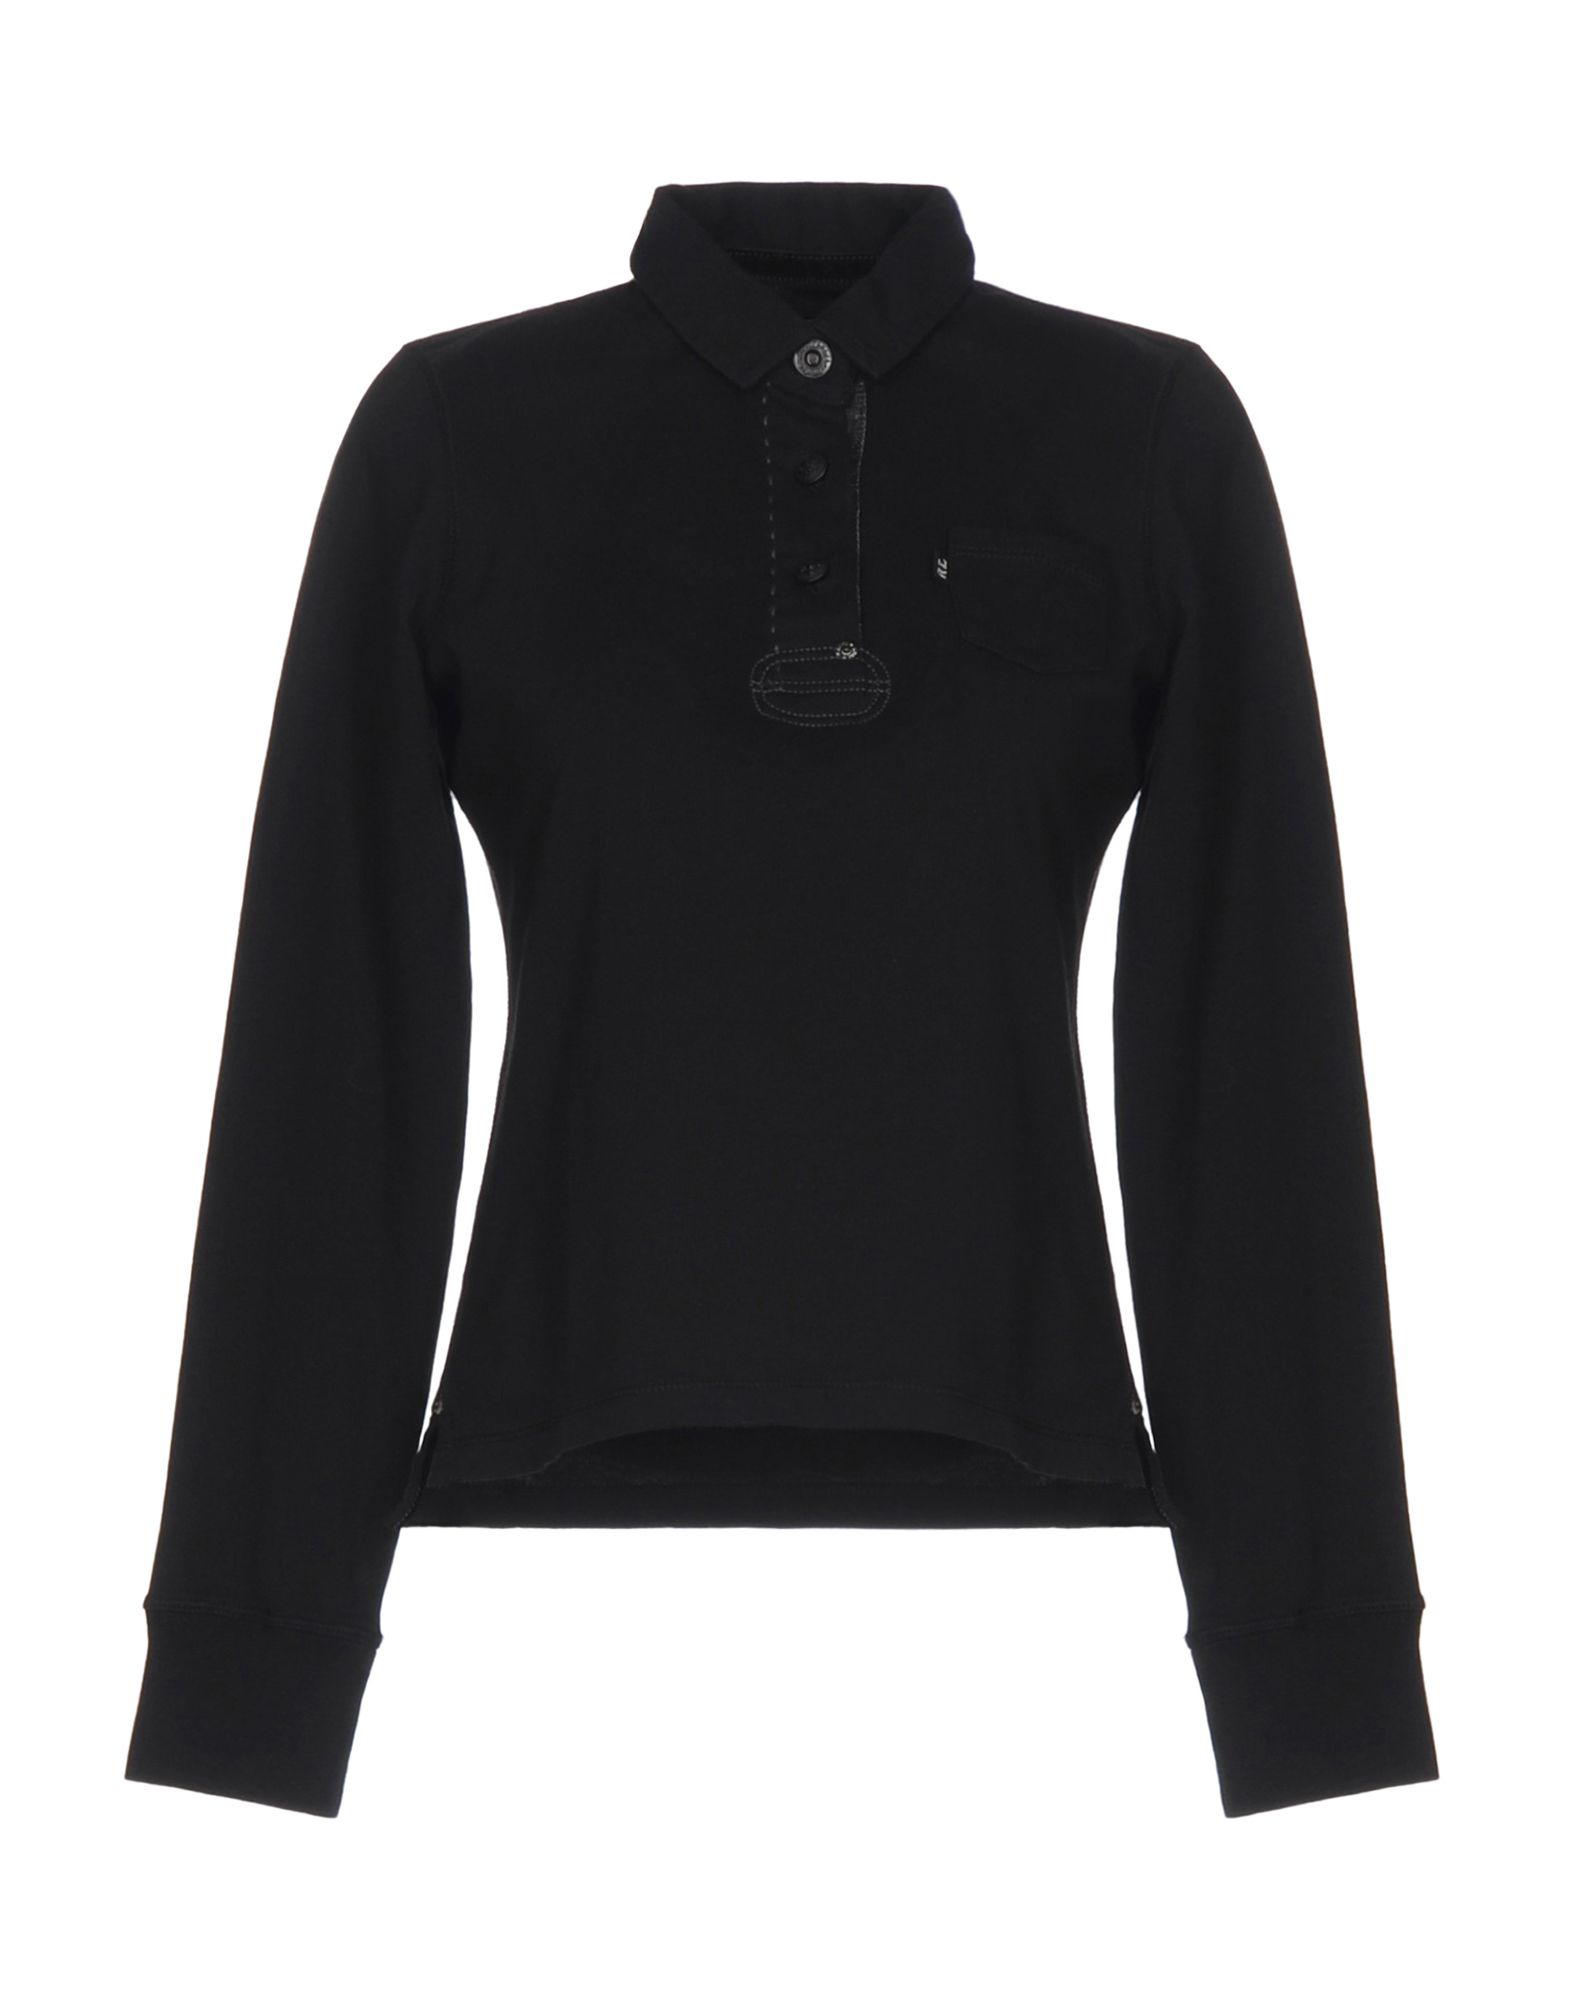 《送料無料》POLO JEANS COMPANY レディース ポロシャツ ブラック M コットン 100%